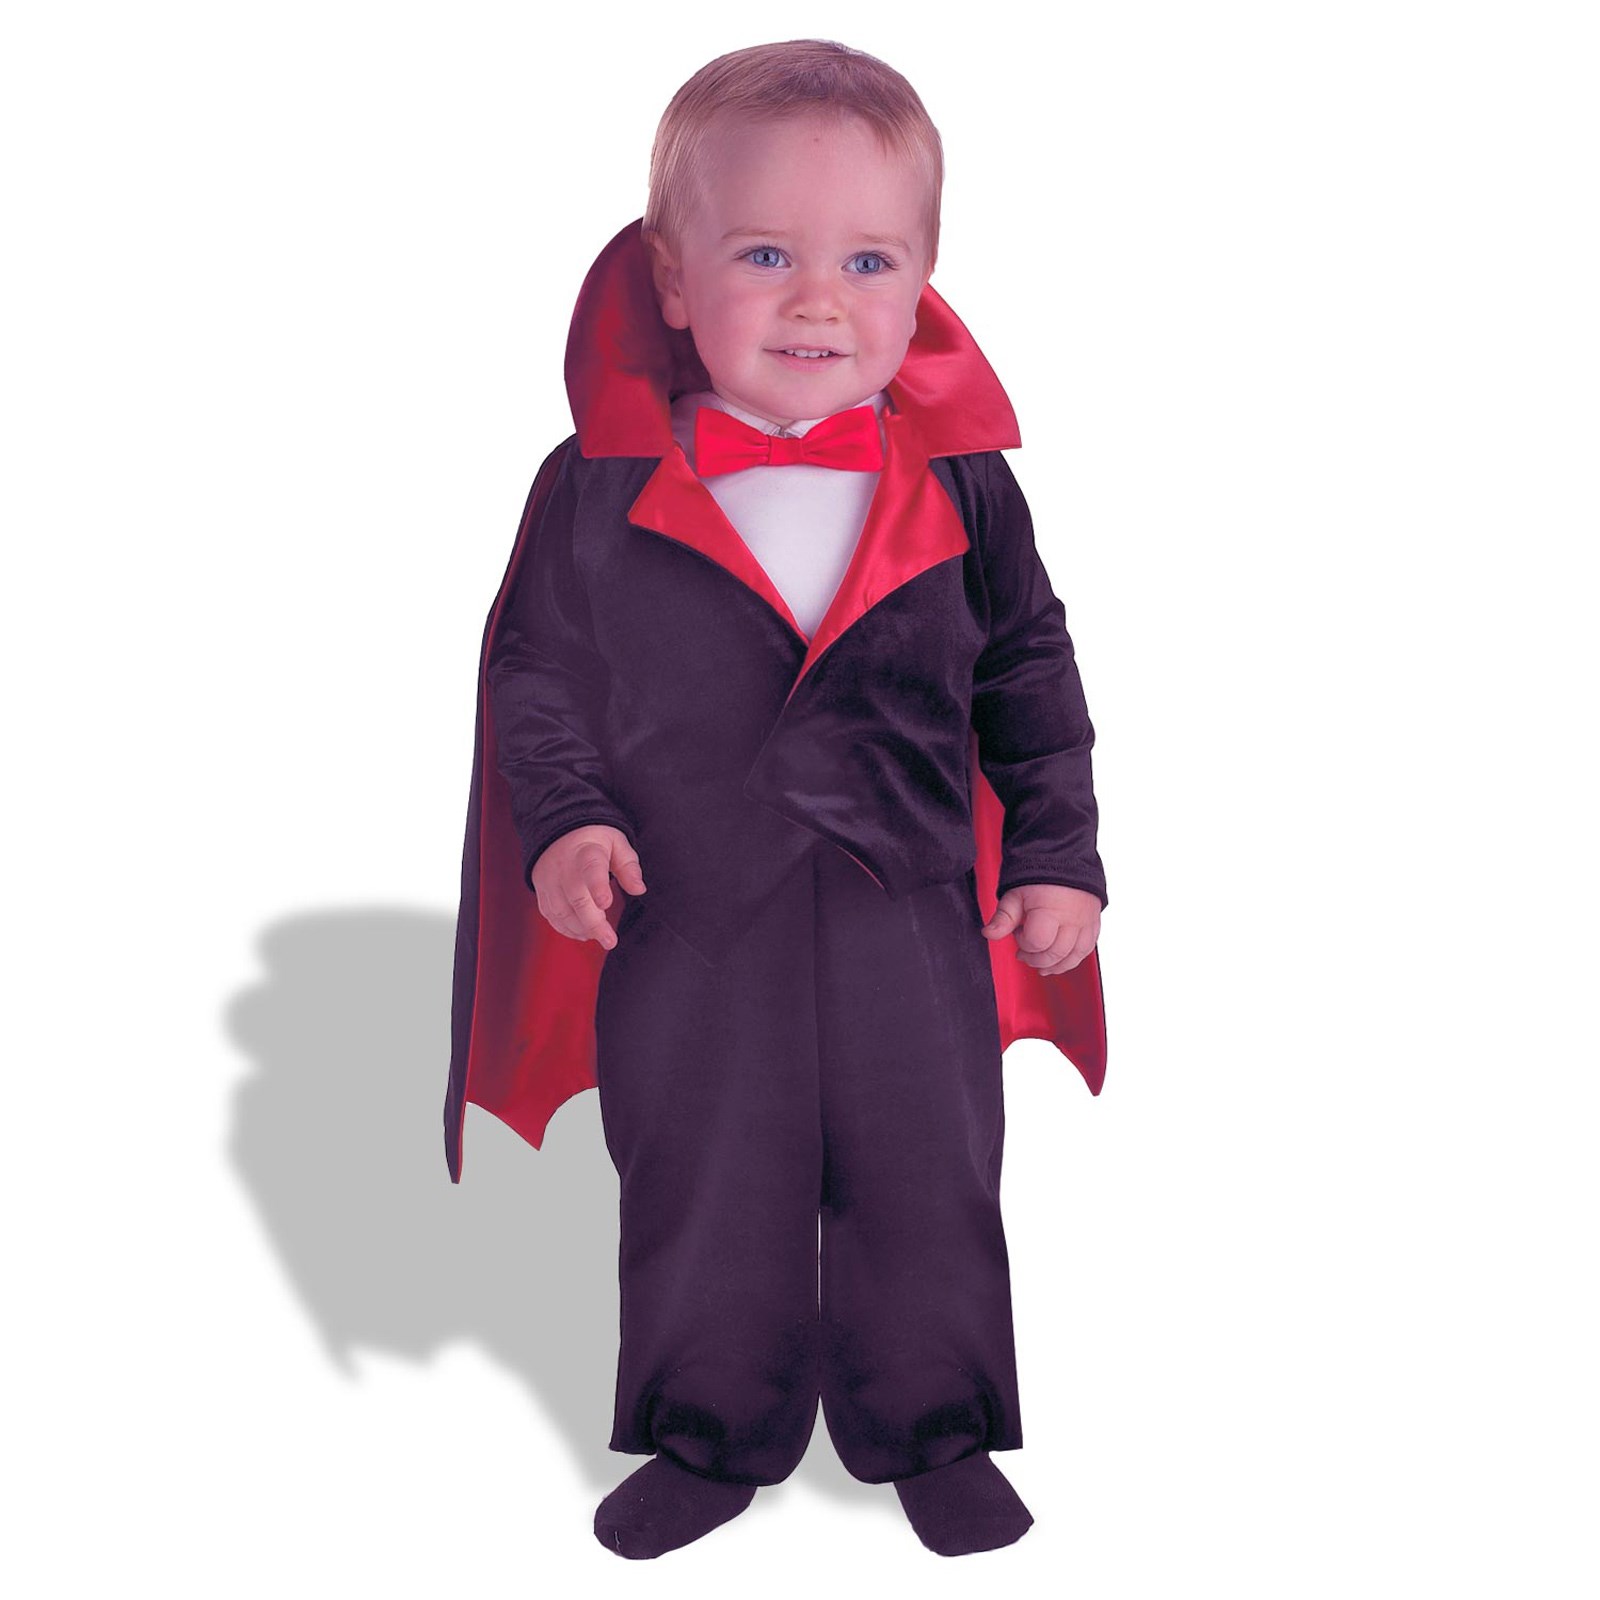 LVampire Infant / Toddler Costume